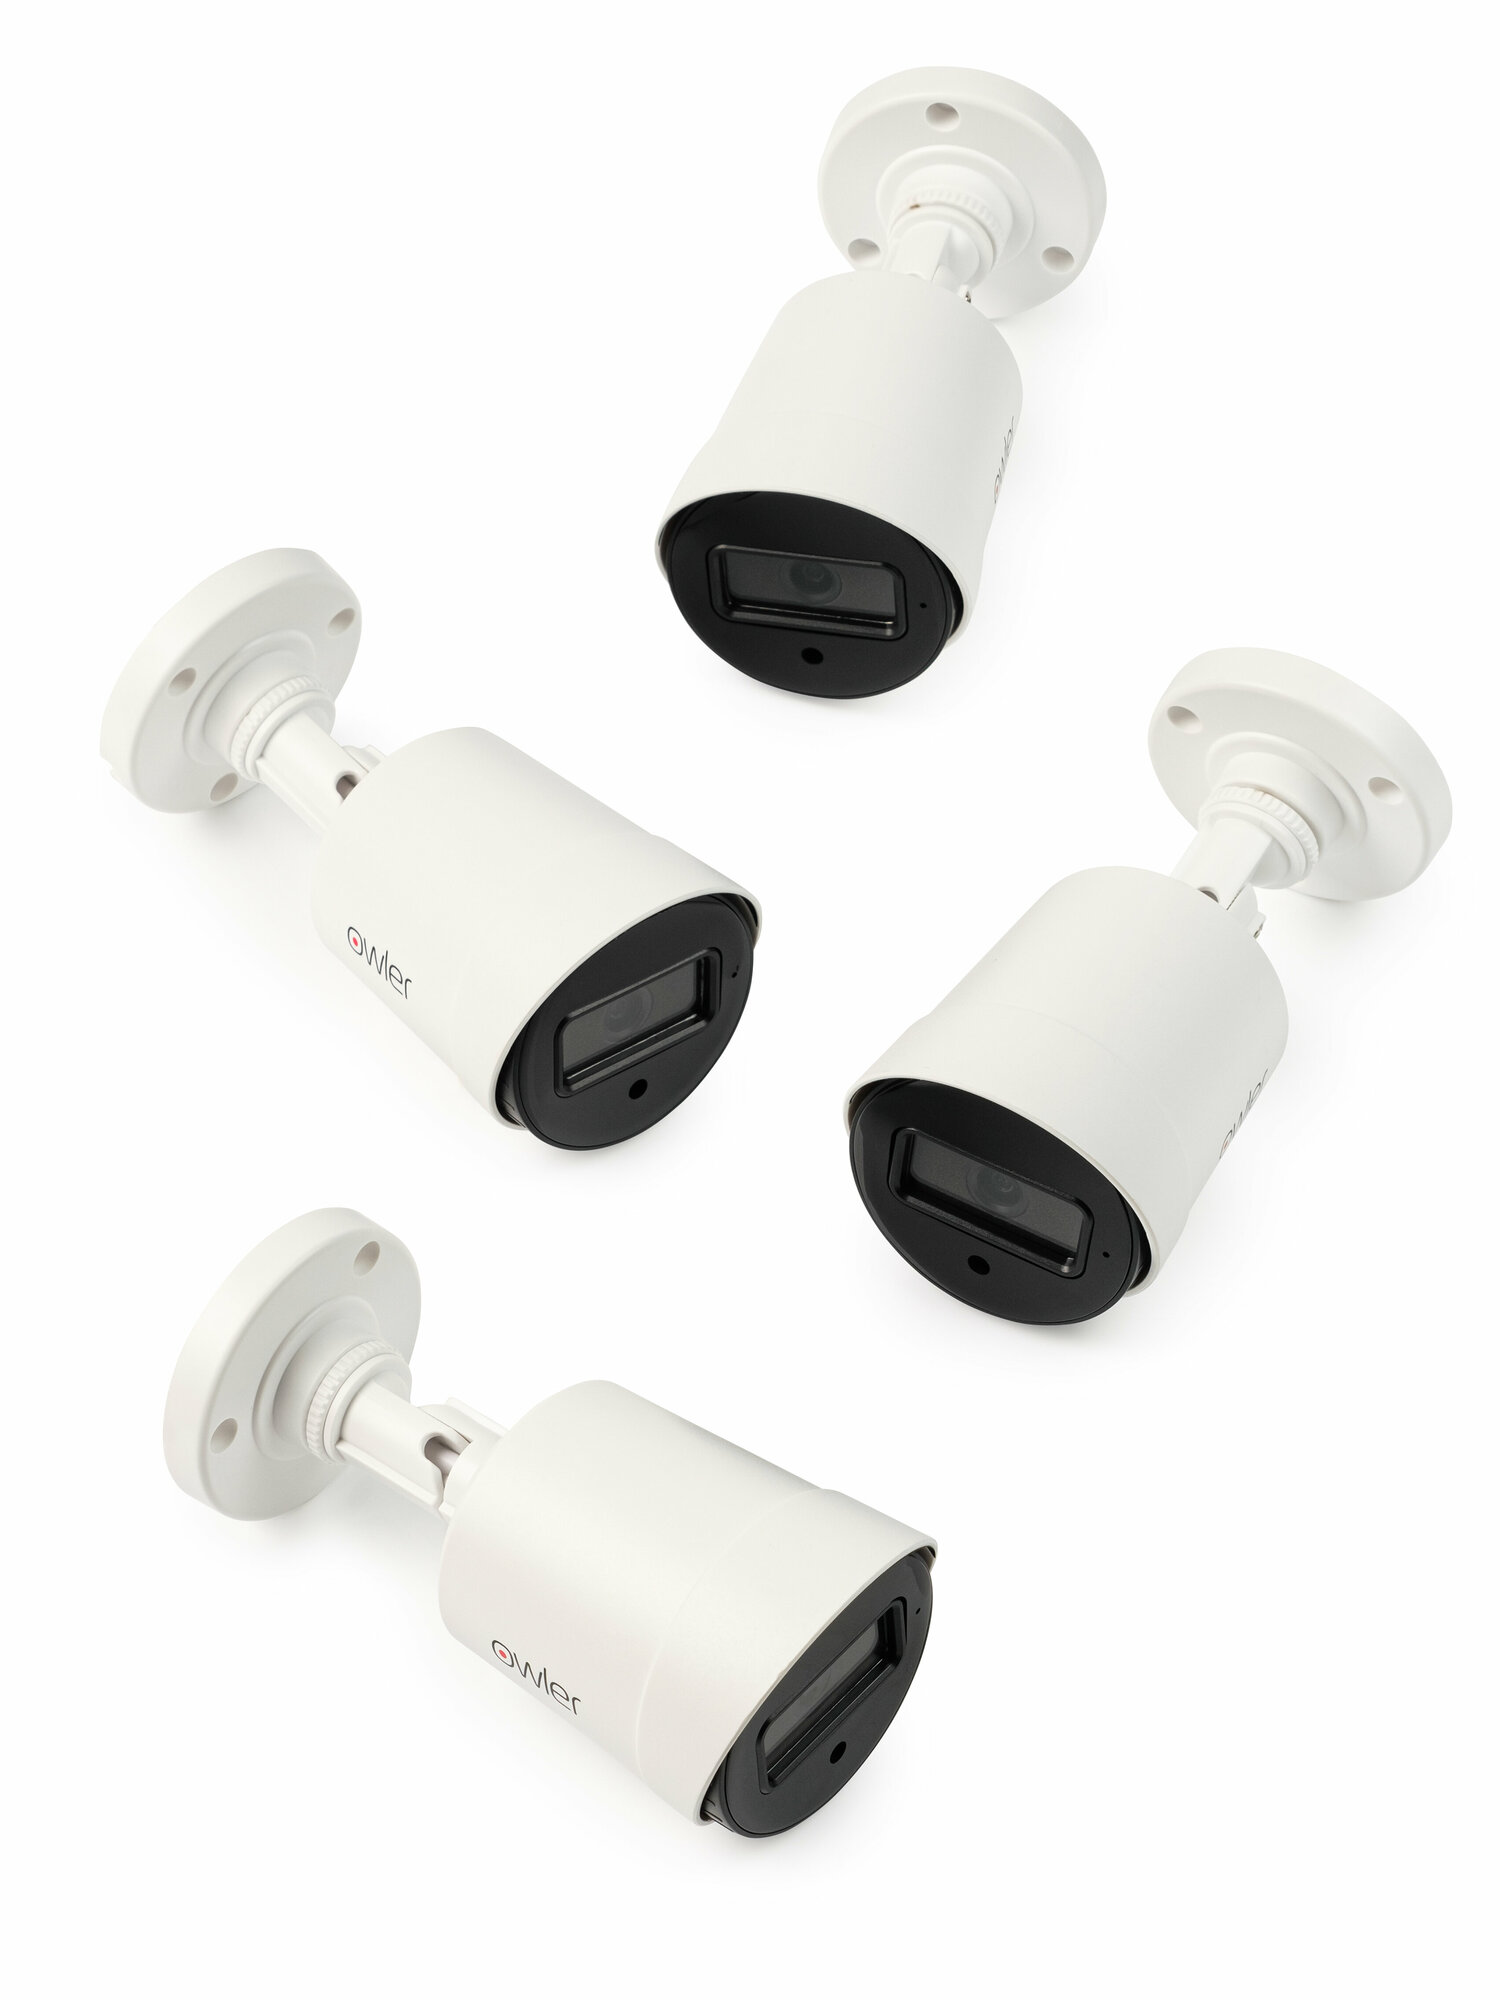 Комплект видеонаблюдения Owler 5MP-4 Уличный 4 камеры 5Мп + видеорегистратор